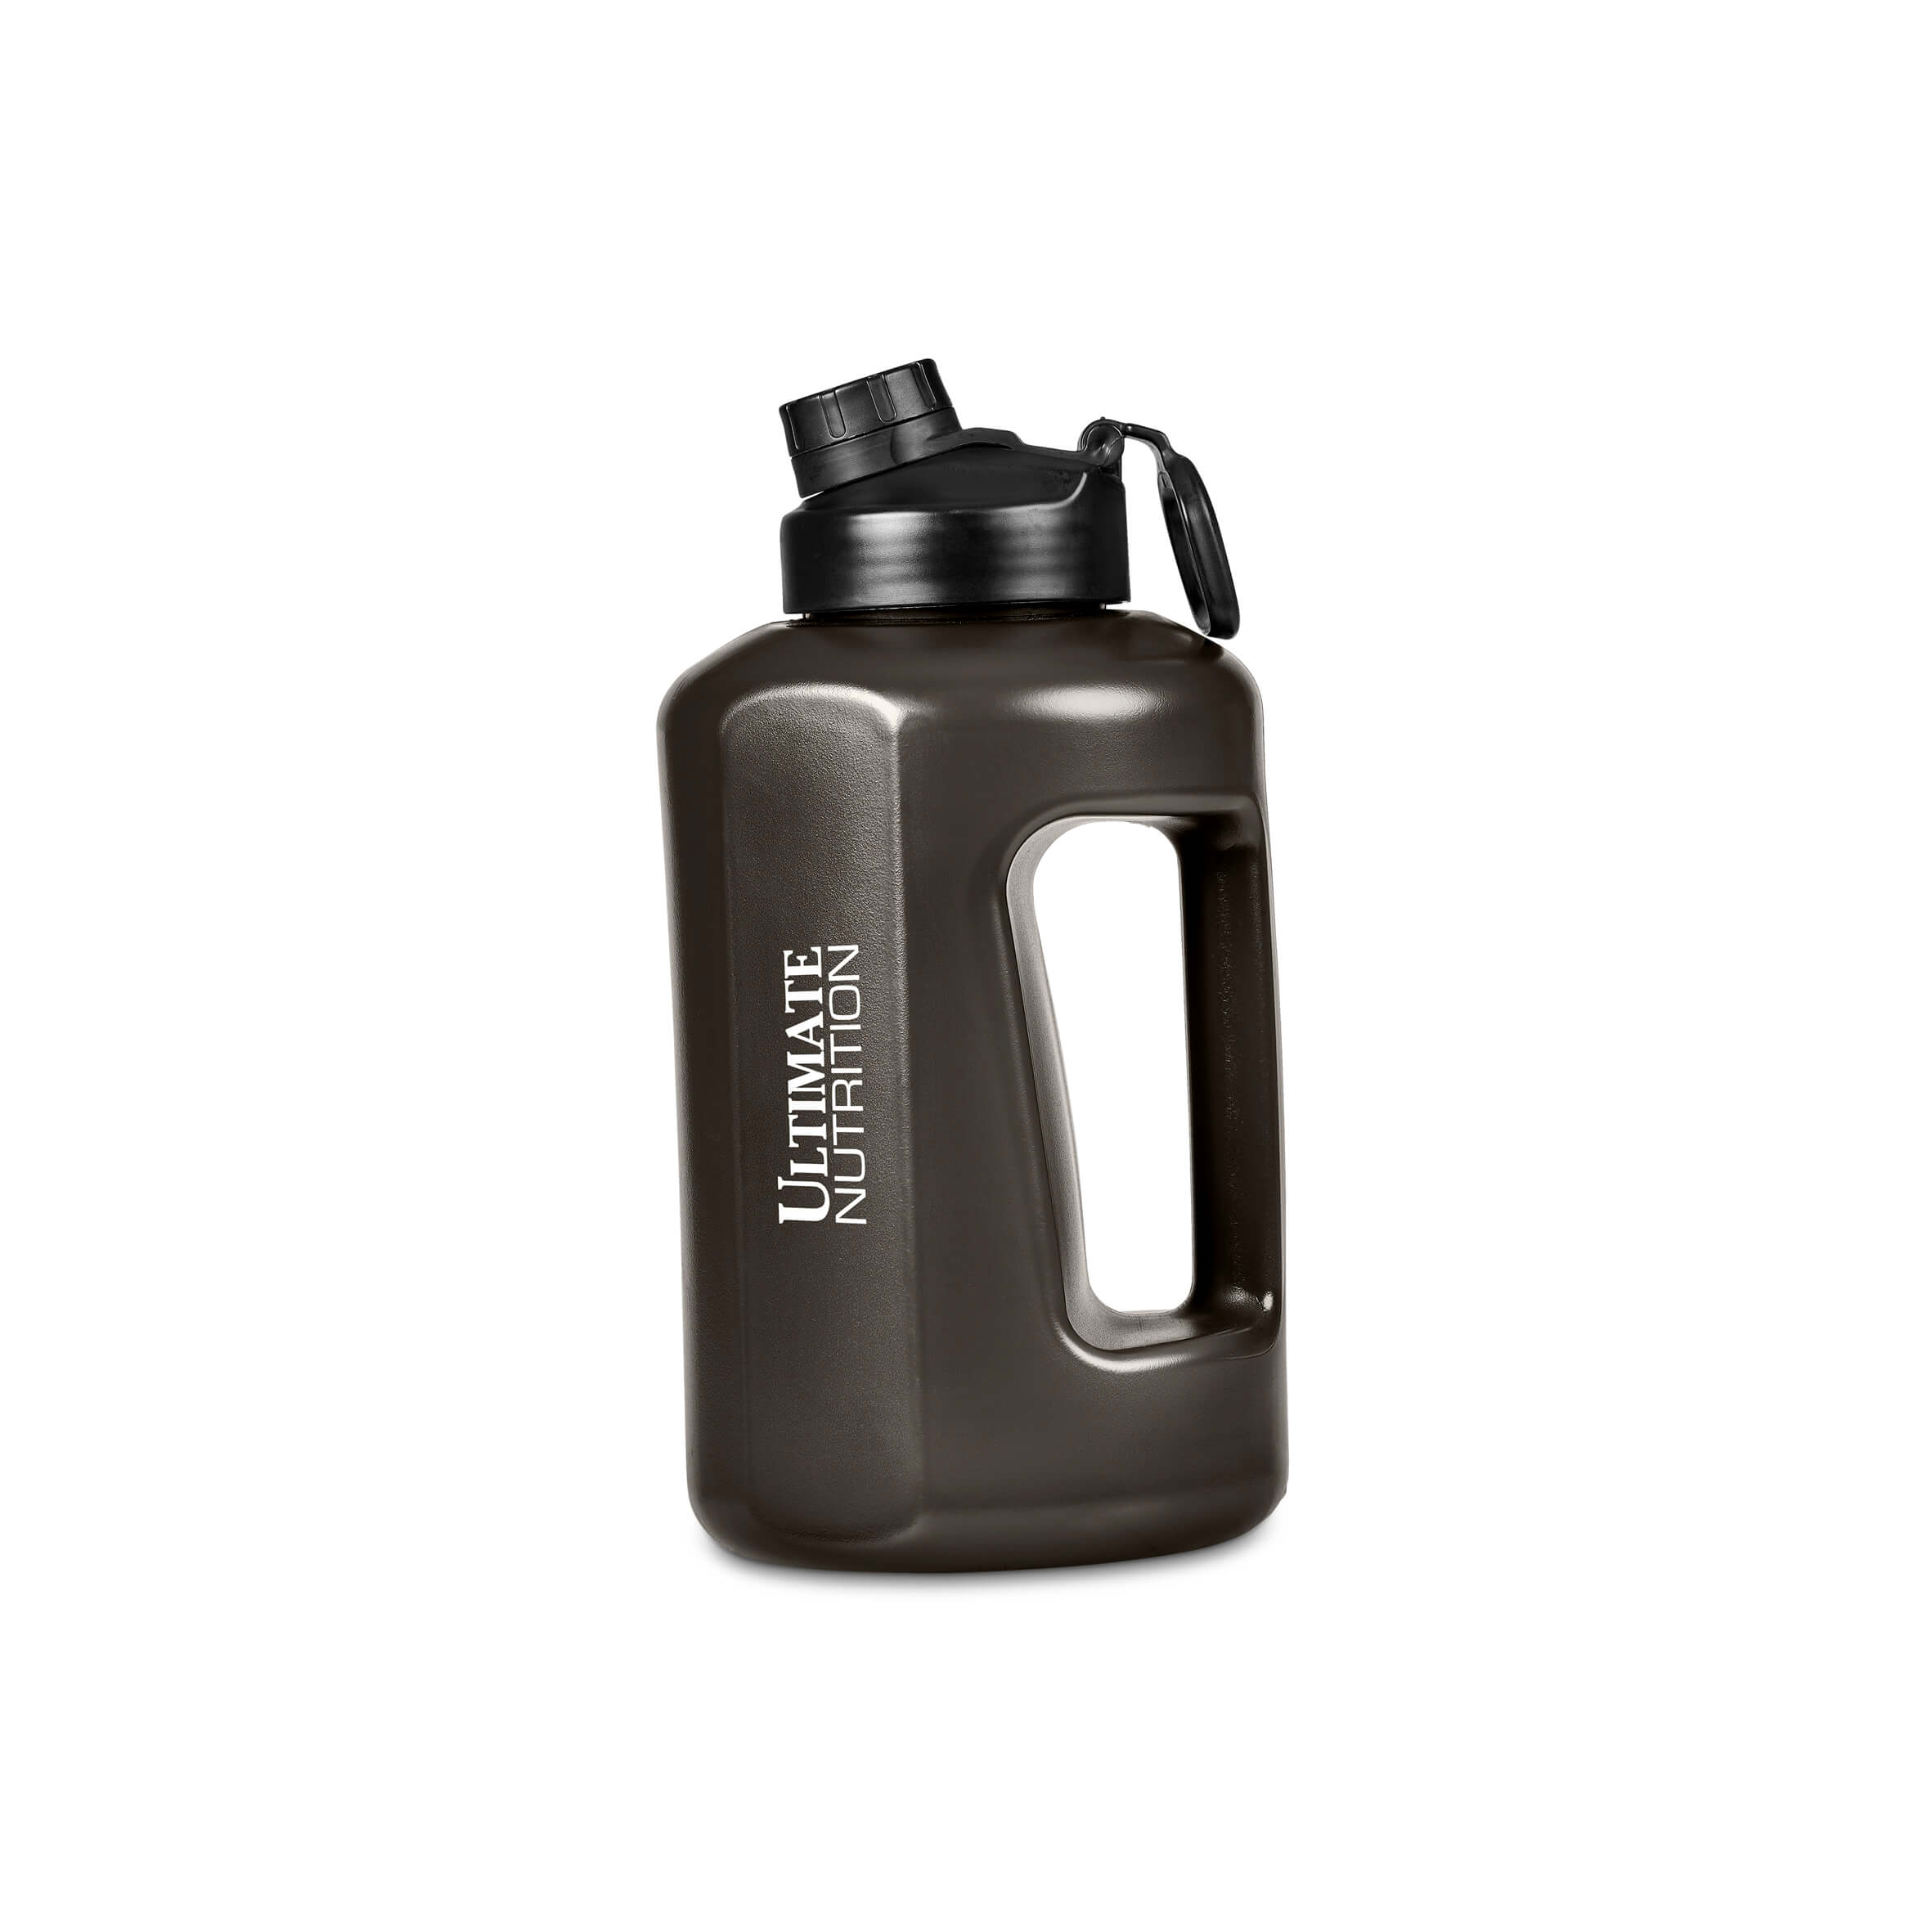 Eva & Elm Jupiter Plastic Water Bottle – 1.5 Litre Drinkware